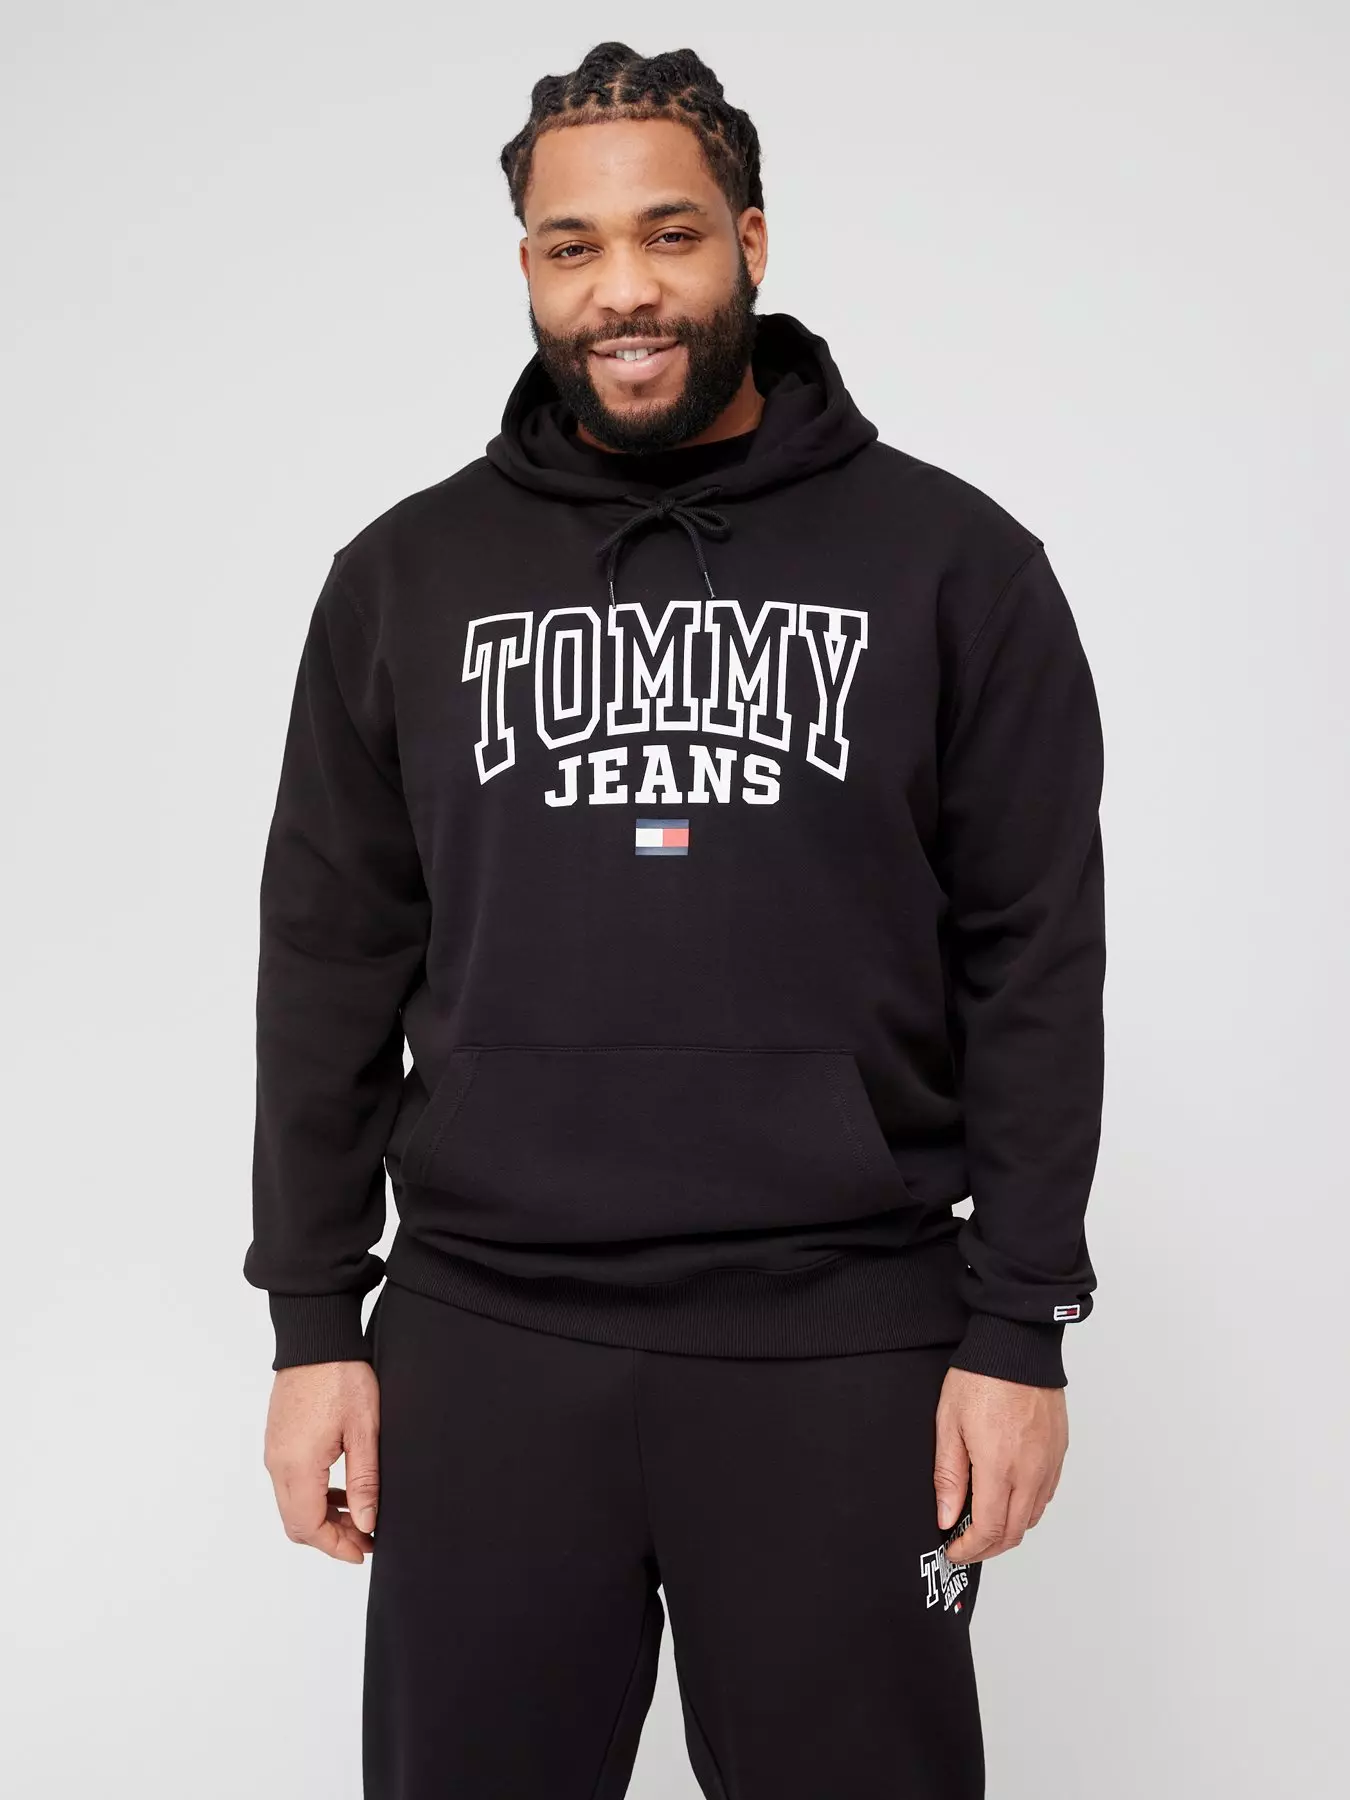 Hoodies | Tommy jeans | Hoodies & sweatshirts | Men | Very Ireland